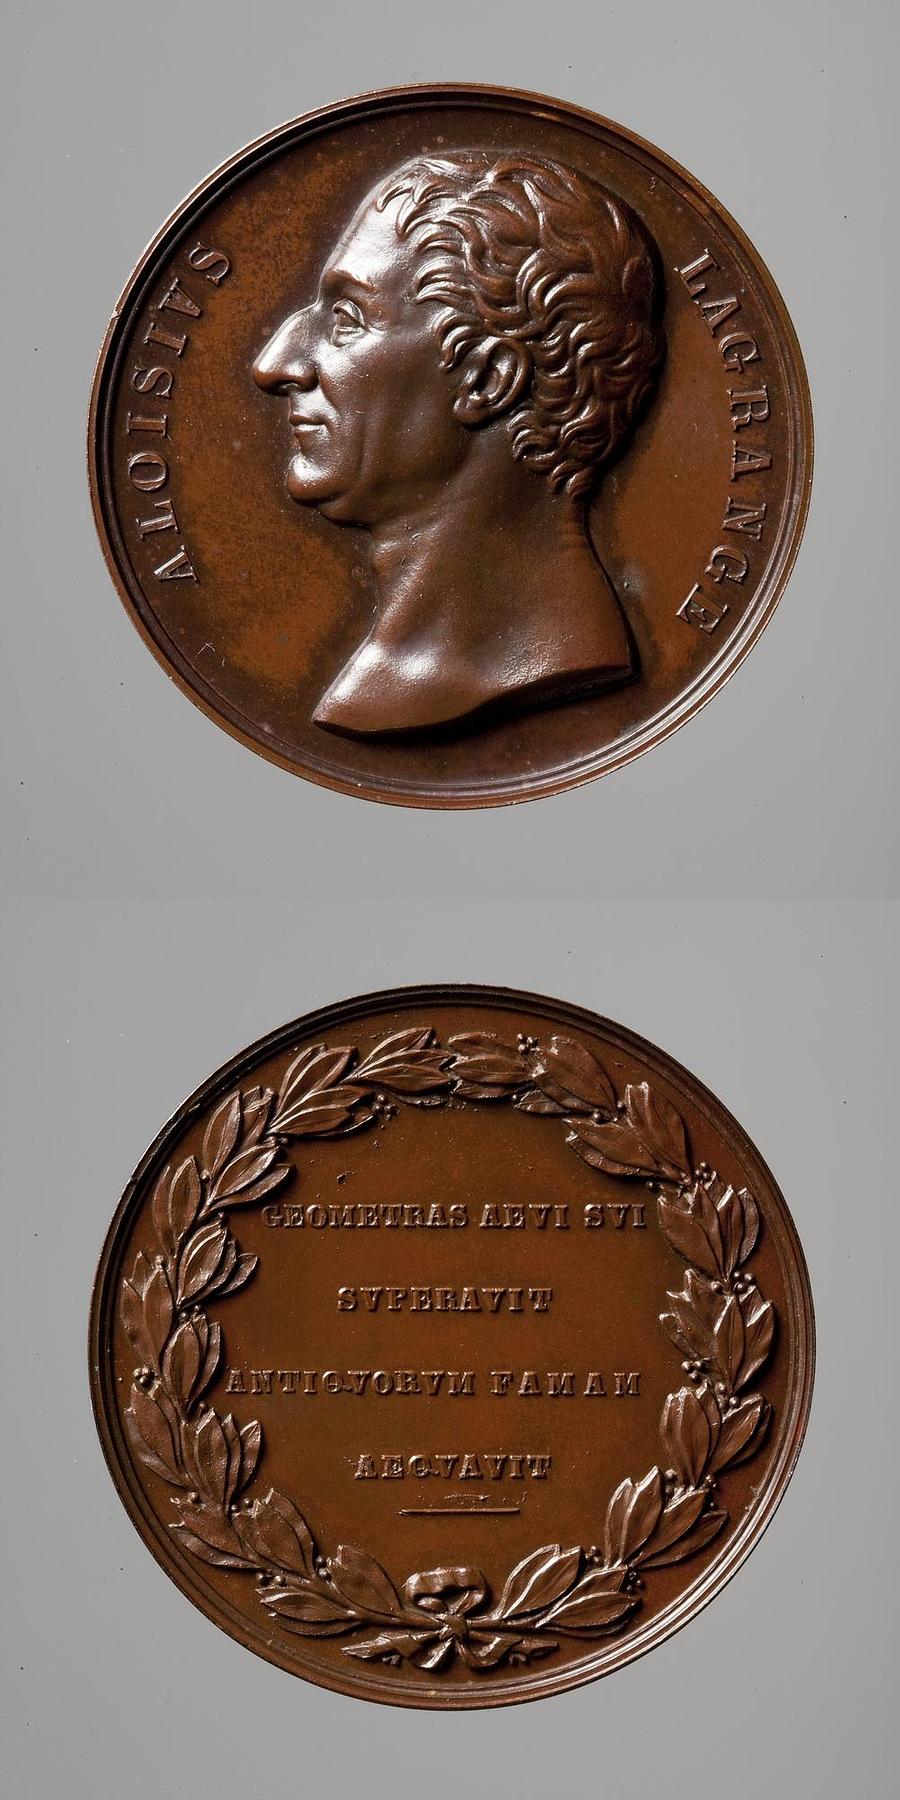 Medaljens forside: Matematikeren Joseph-Louis Lagrange. Medaljens bagside: Laurbærkrans og inskription, F68